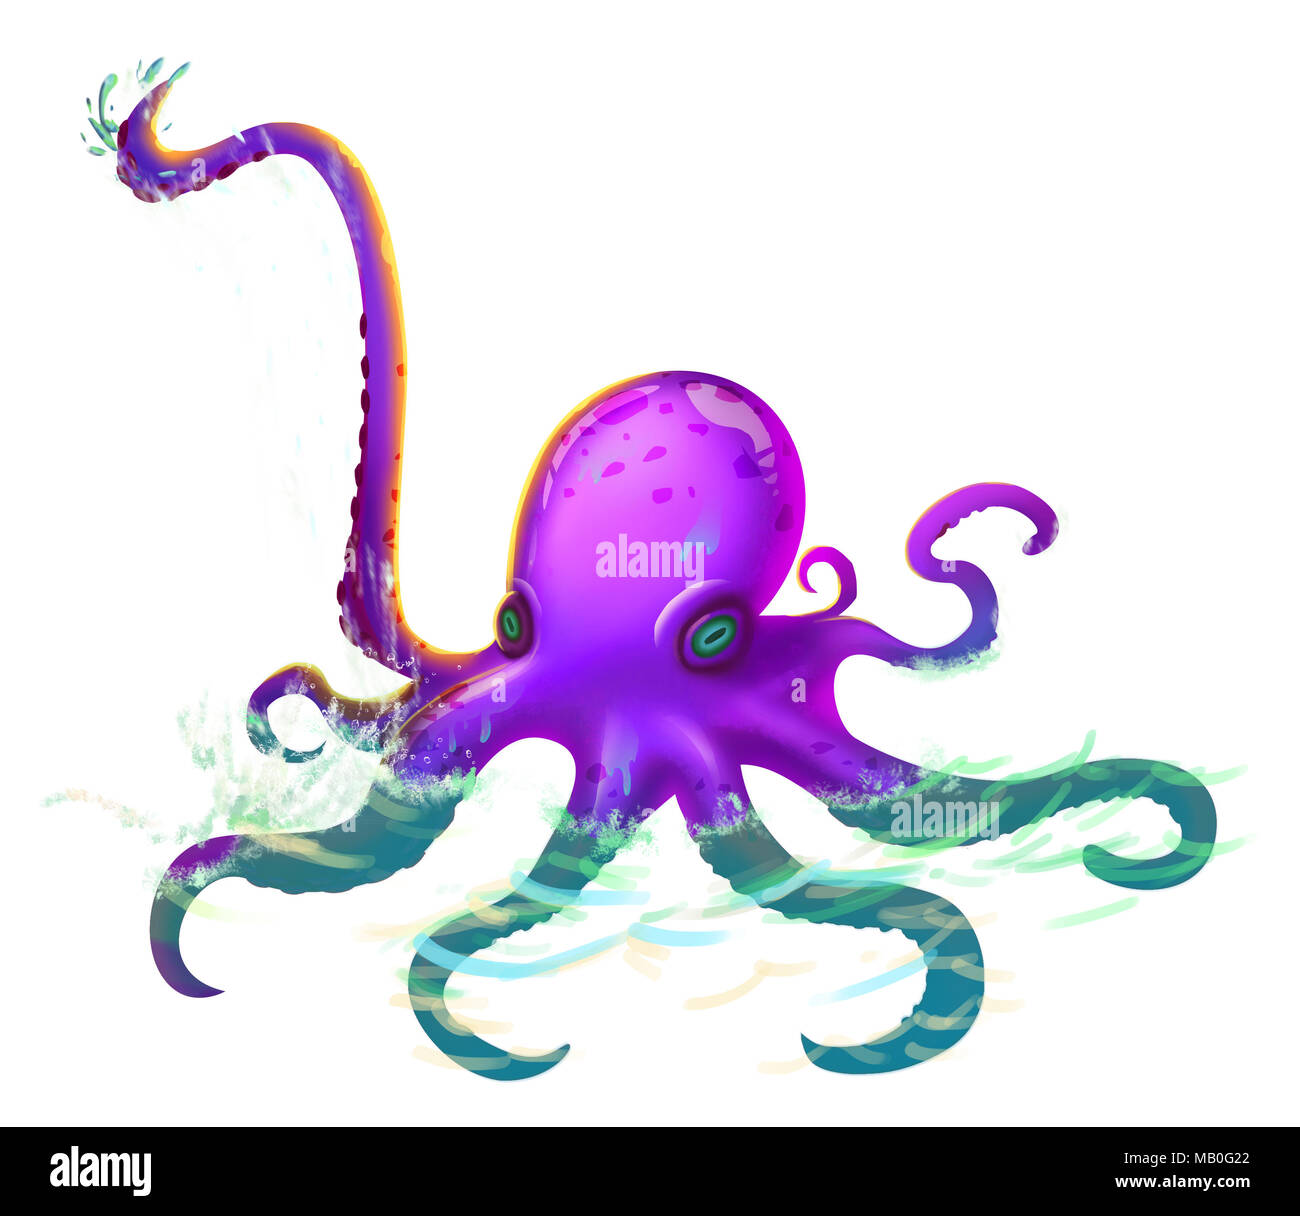 Les tentacules de la Pieuvre géante, réaliste et fantastique avec un style futuriste. Jeu vidéo art numérique CG, Concept Illustration, Caricature réaliste Banque D'Images